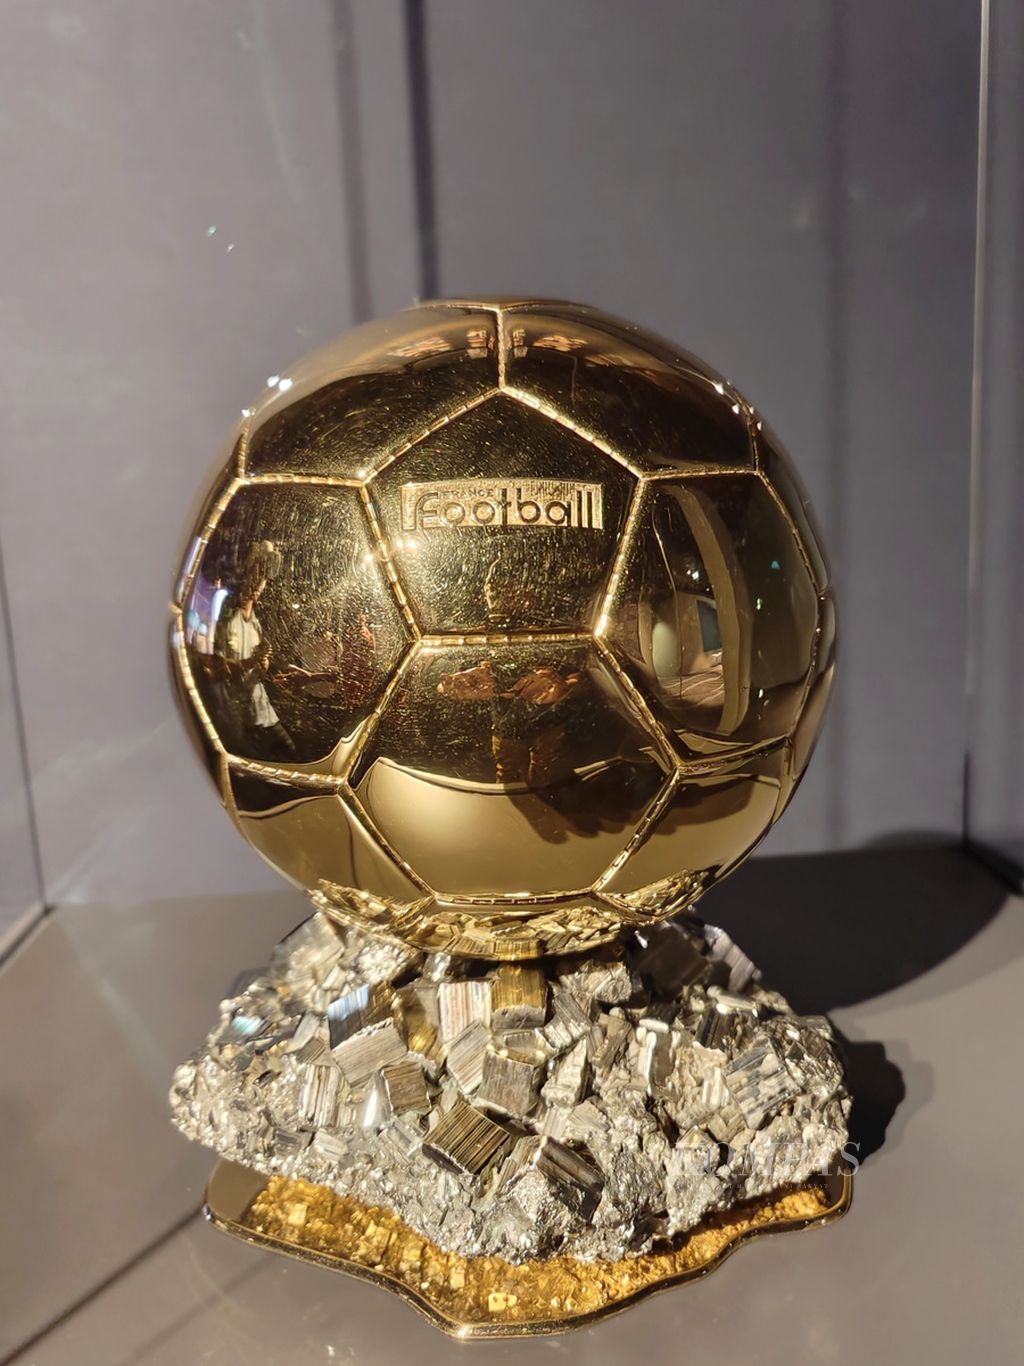 Salah satu trofi Ballon d'Or milik bintang sepak bola Argentina, Lionel Messi, yang dipajang di 3-2-1 Museum Olimpiade dan Olahraga Qatar, Doha, Qatar, Selasa (29/11/2022). Museum itu menjadi salah satu sarana pendidikan olahraga yang berada di kawasan Zona Aspire.